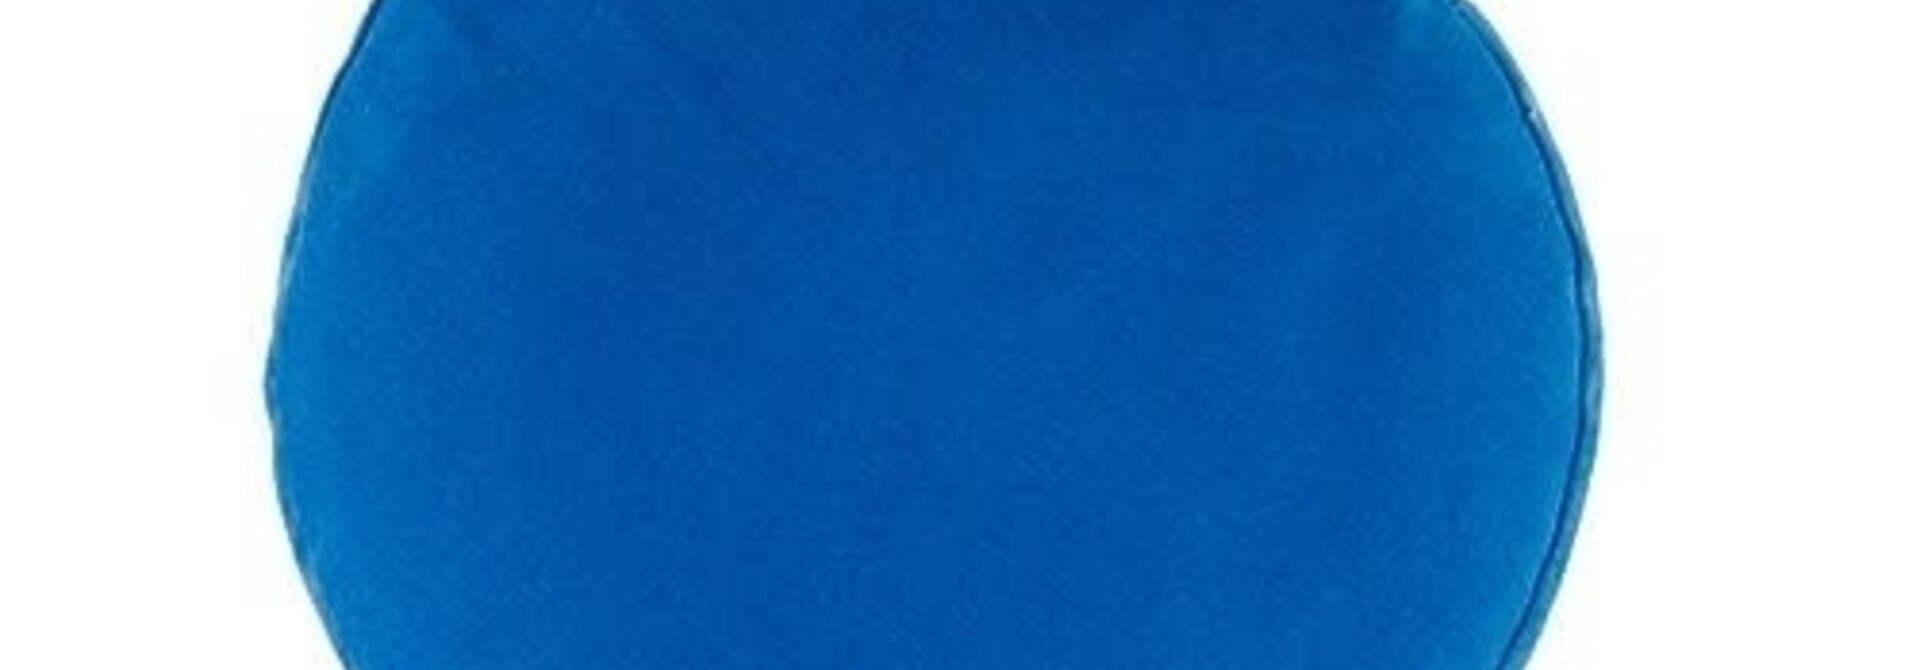 Yogisha Singing Bowl Cushion Deluxe - Light Blue